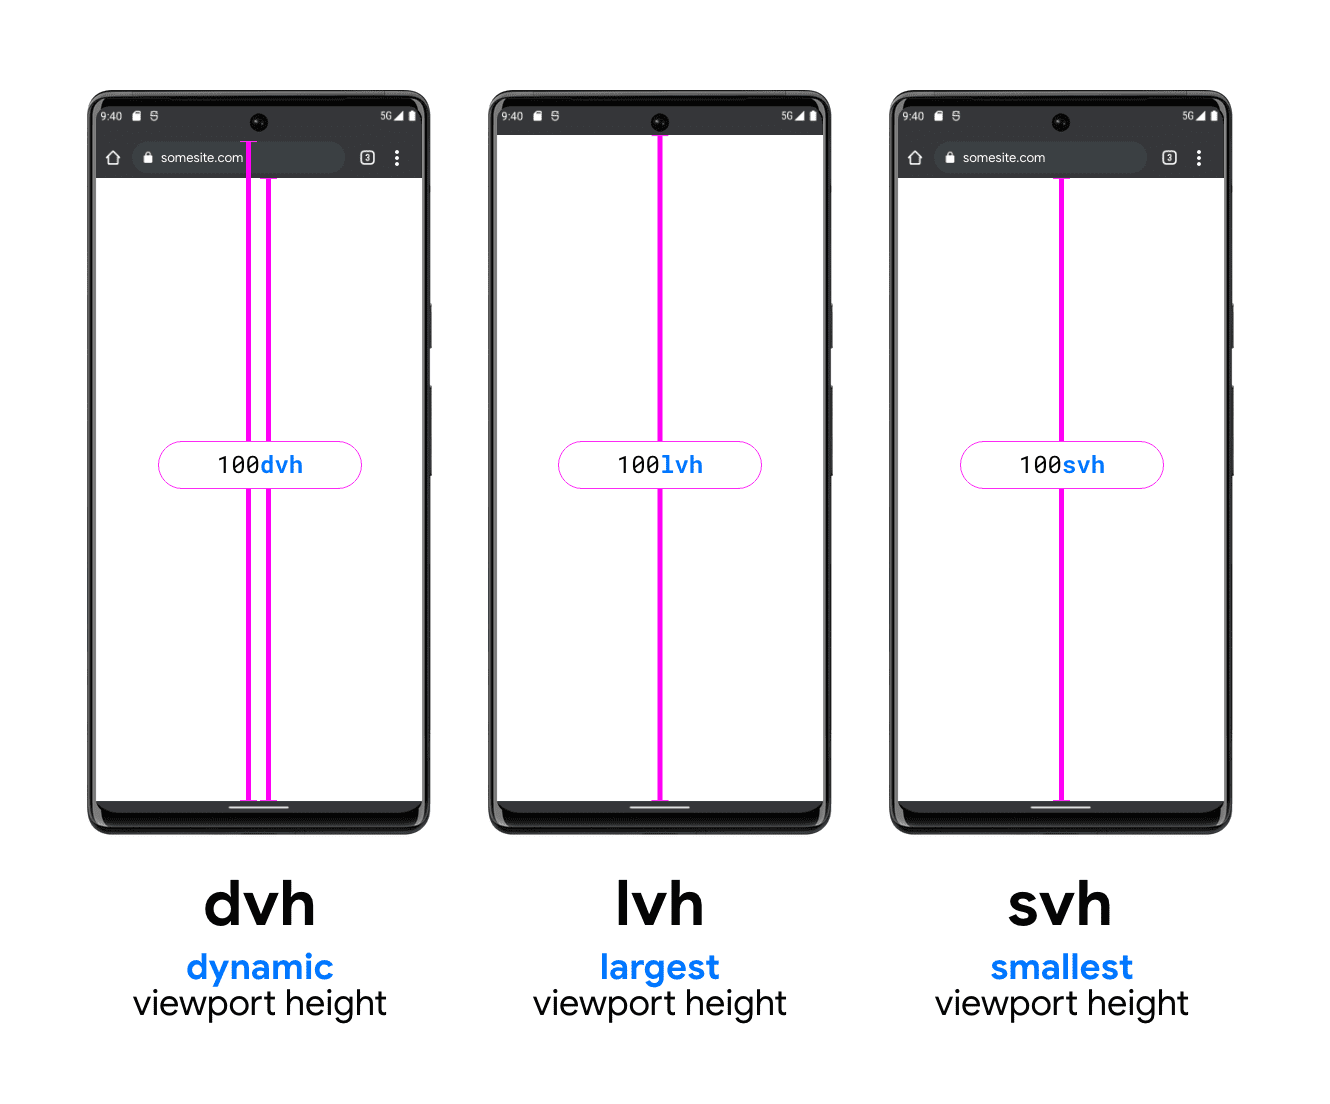 Hình ảnh có 3 chiếc điện thoại minh hoạ DVH, LVH và SVH. Điện thoại ví dụ về DVH có hai đường dọc, một đường nằm giữa cuối thanh tìm kiếm và cuối khung nhìn và một đường nằm giữa trên thanh tìm kiếm (trong thanh trạng thái hệ thống) đến cuối khung nhìn; cho thấy cách DVH có thể thuộc một trong hai độ dài này. LVH hiển thị ở giữa với một đường nằm giữa phần cuối của thanh trạng thái thiết bị và nút của khung nhìn điện thoại. Cuối cùng là ví dụ về đơn vị SVH, hiển thị một dòng từ cuối thanh tìm kiếm của trình duyệt đến cuối khung nhìn